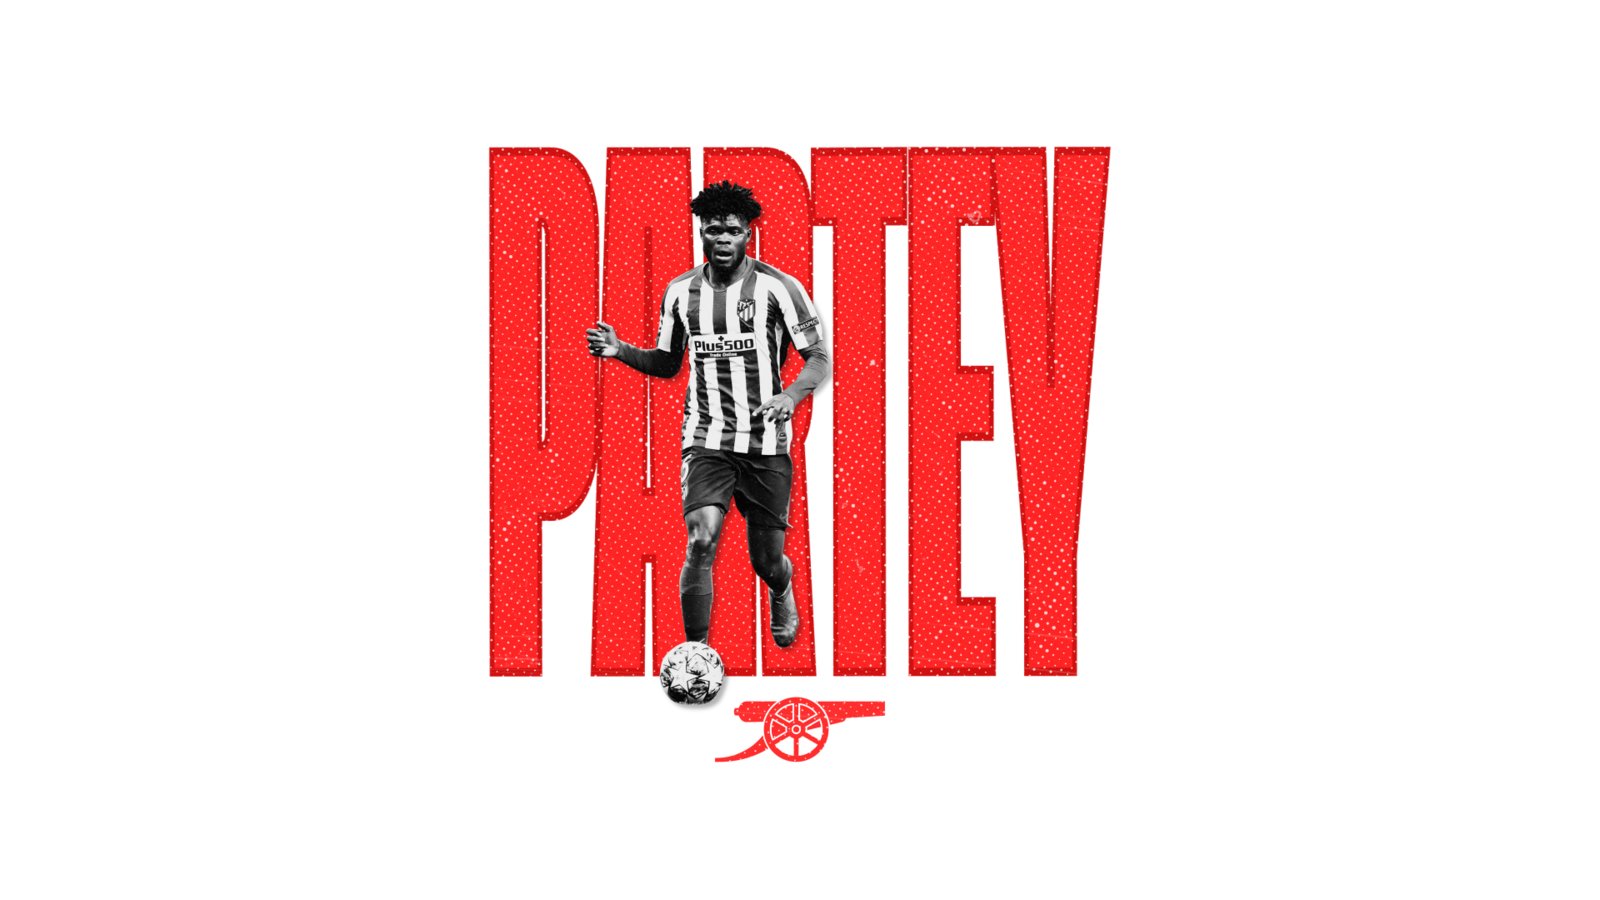 Welcome to Arsenal, Thomas Partey!